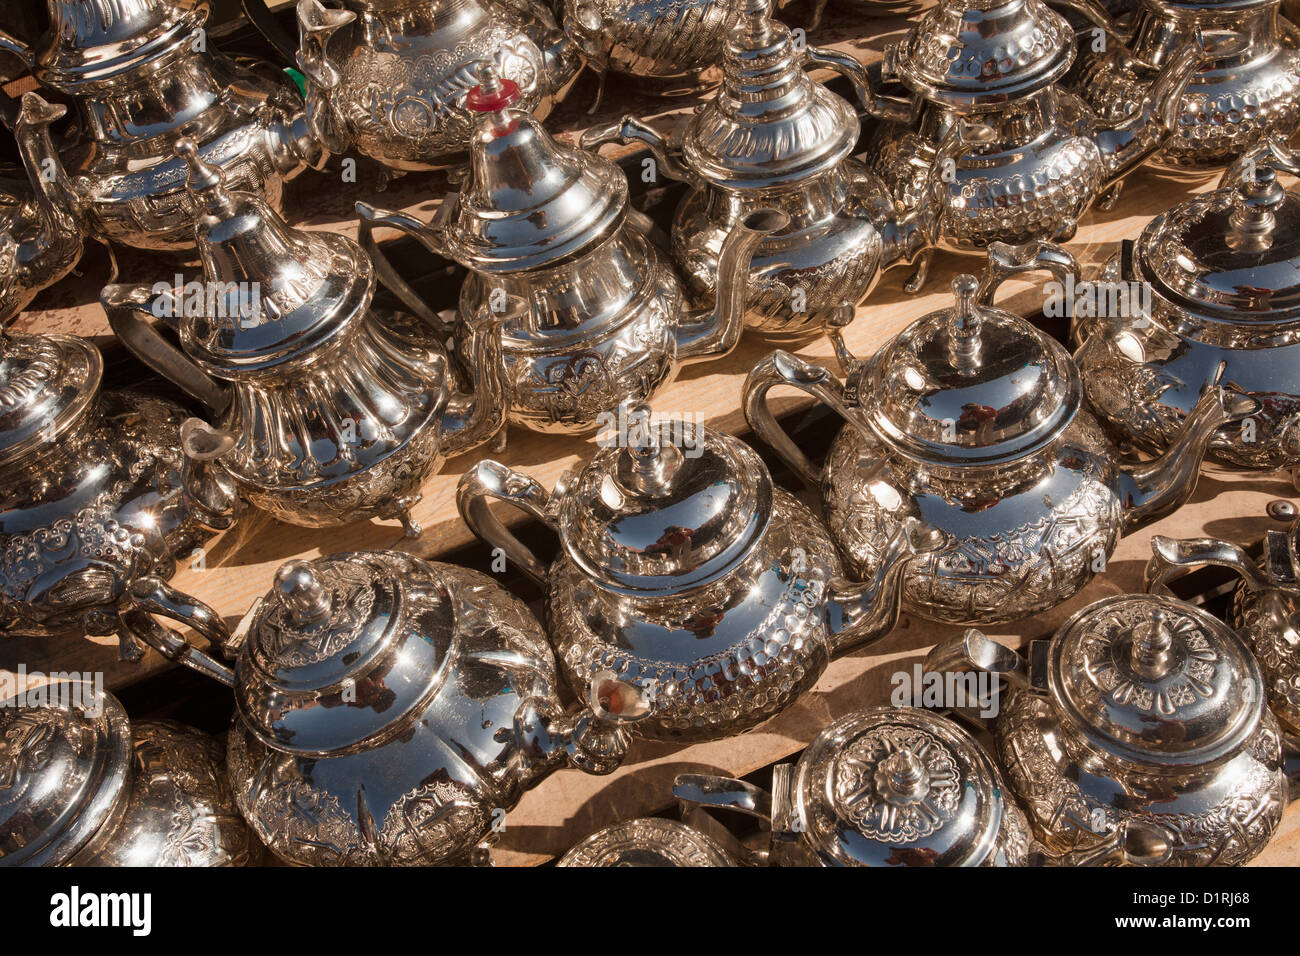 Le Maroc, Marrakech, marché. Des théières pour la vente. Banque D'Images